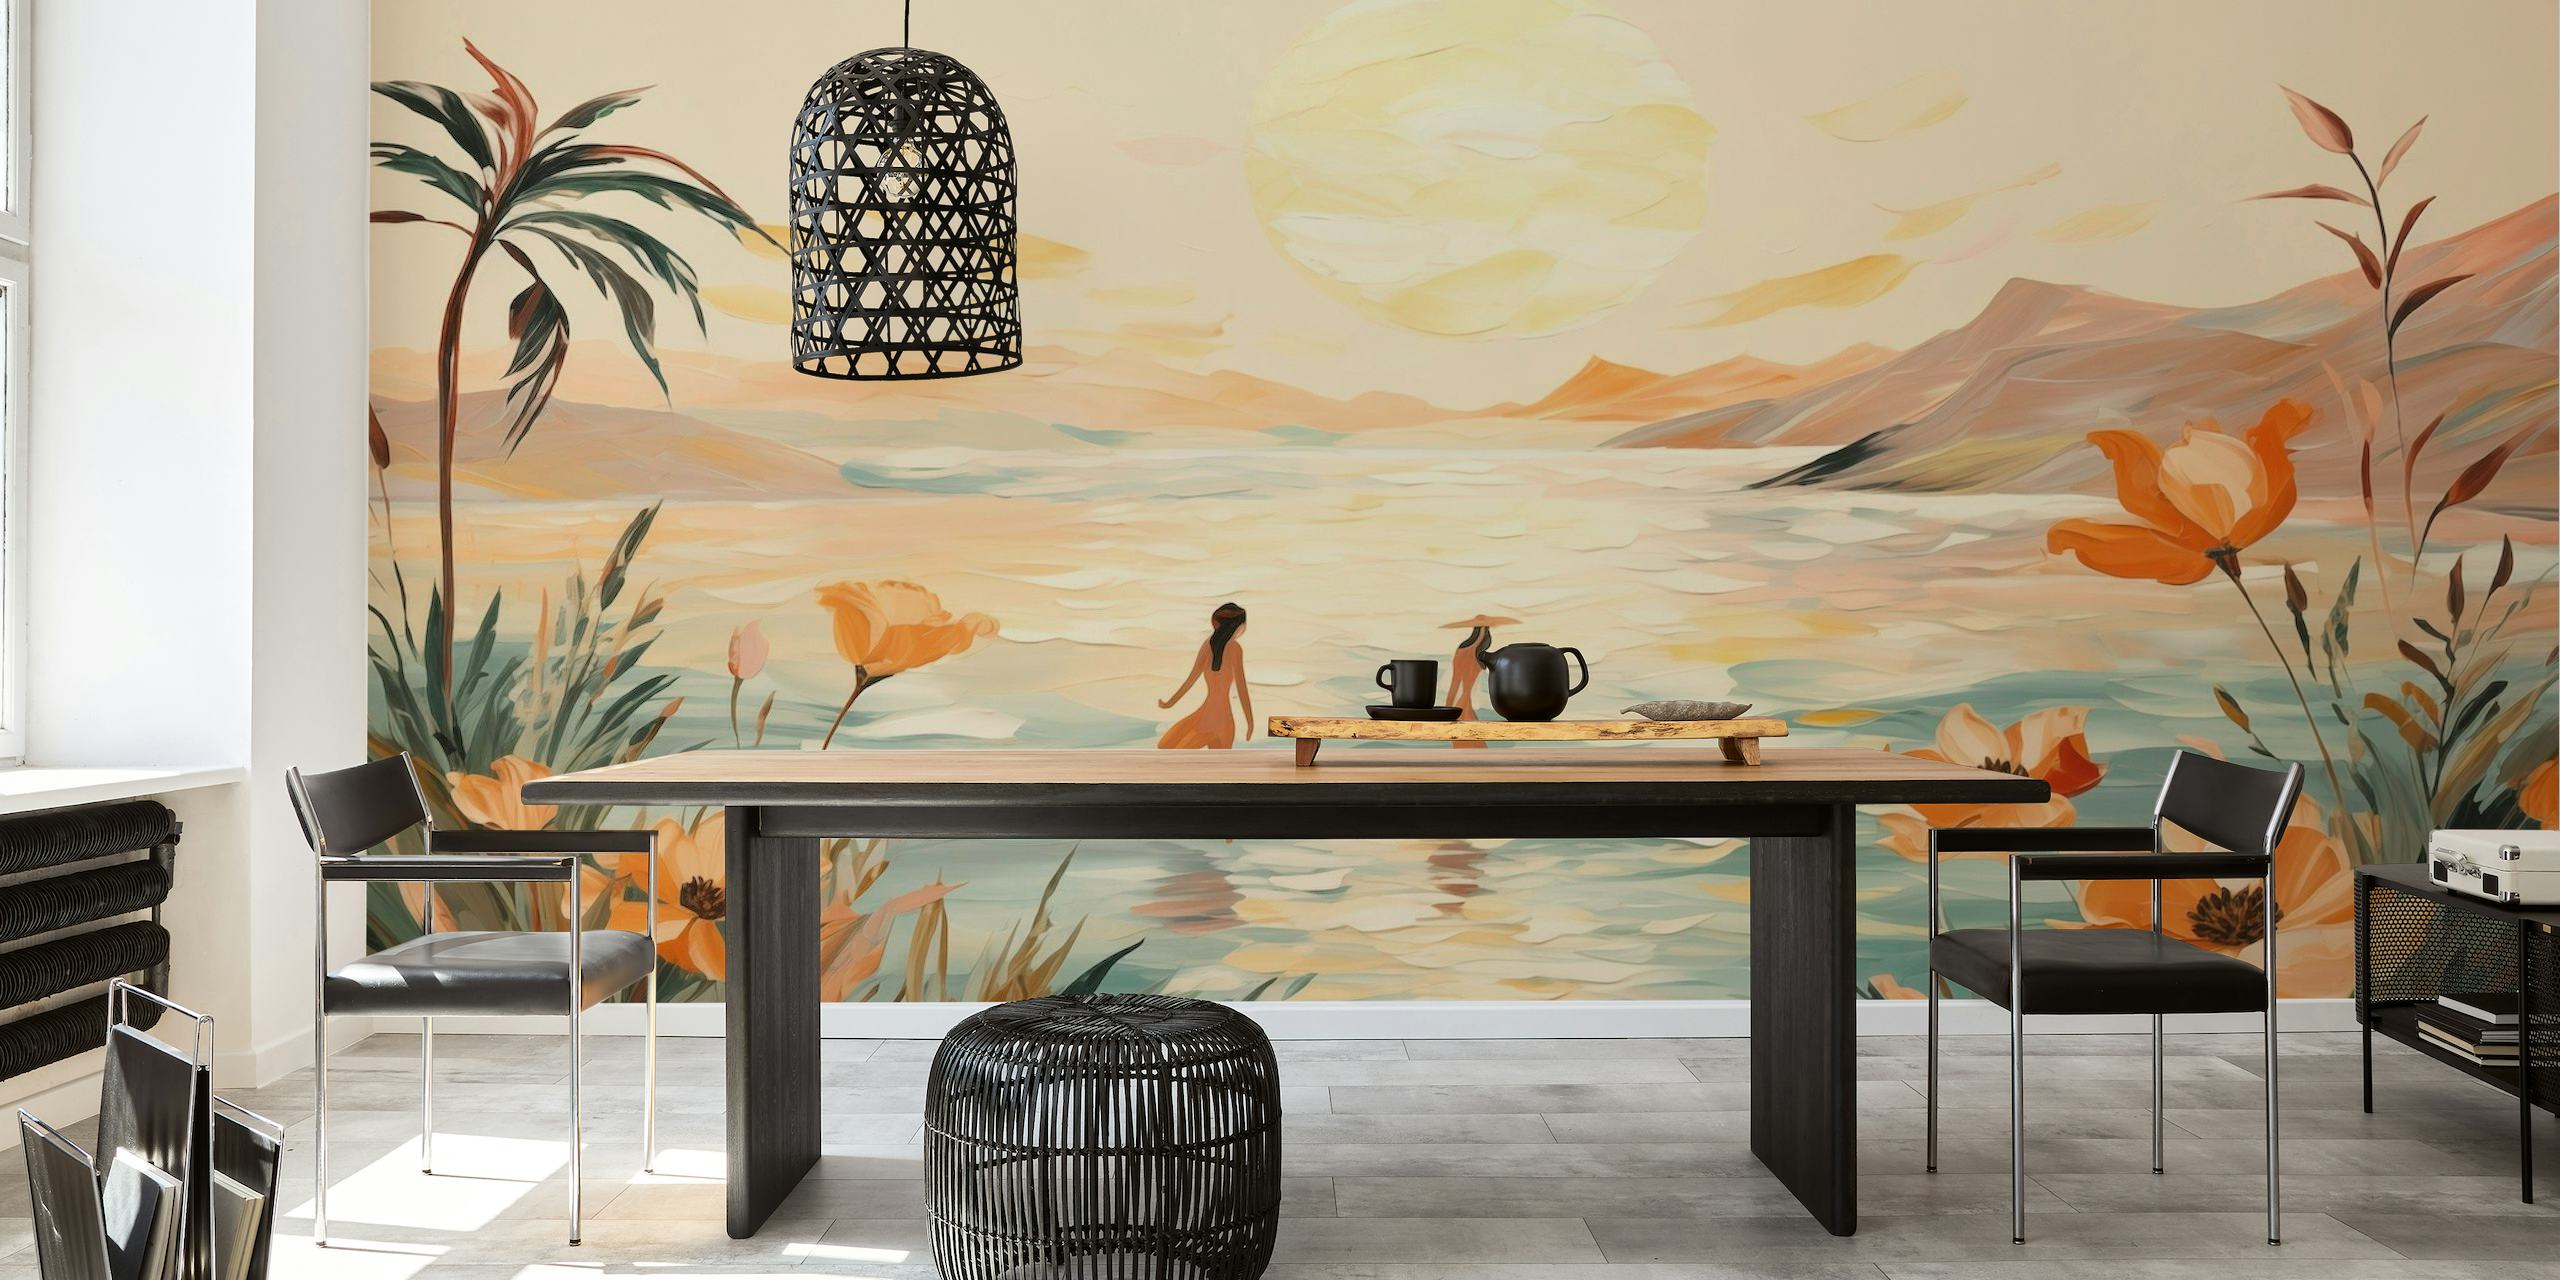 Mural de parede estilo impressionista de duas figuras em uma praia ao pôr do sol com palmeiras e flores